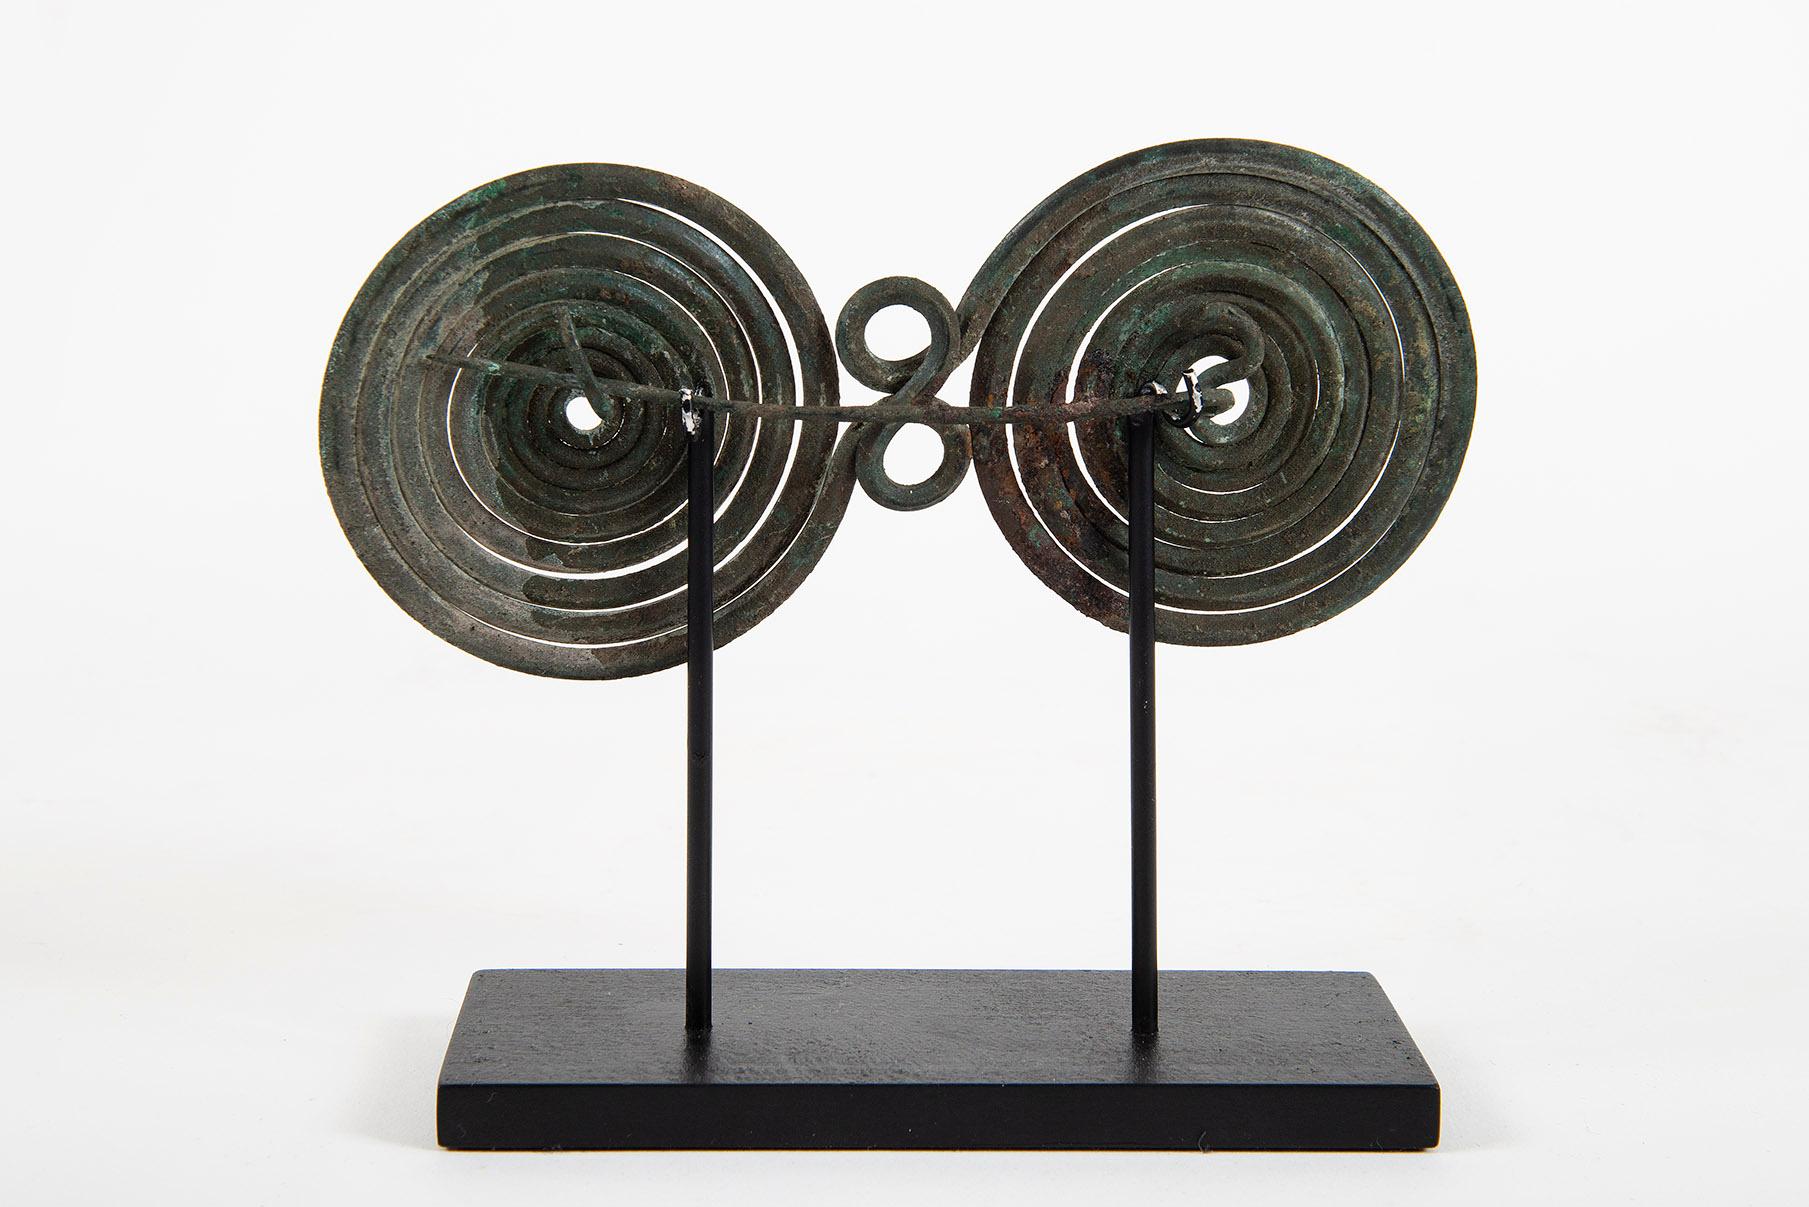 Spiralfibula, Hallstatt, 1. Eisenzeitalter, Bronze, Skulptur, Antiquitäten, Design (Gold), Abstract Sculpture, von Unknown